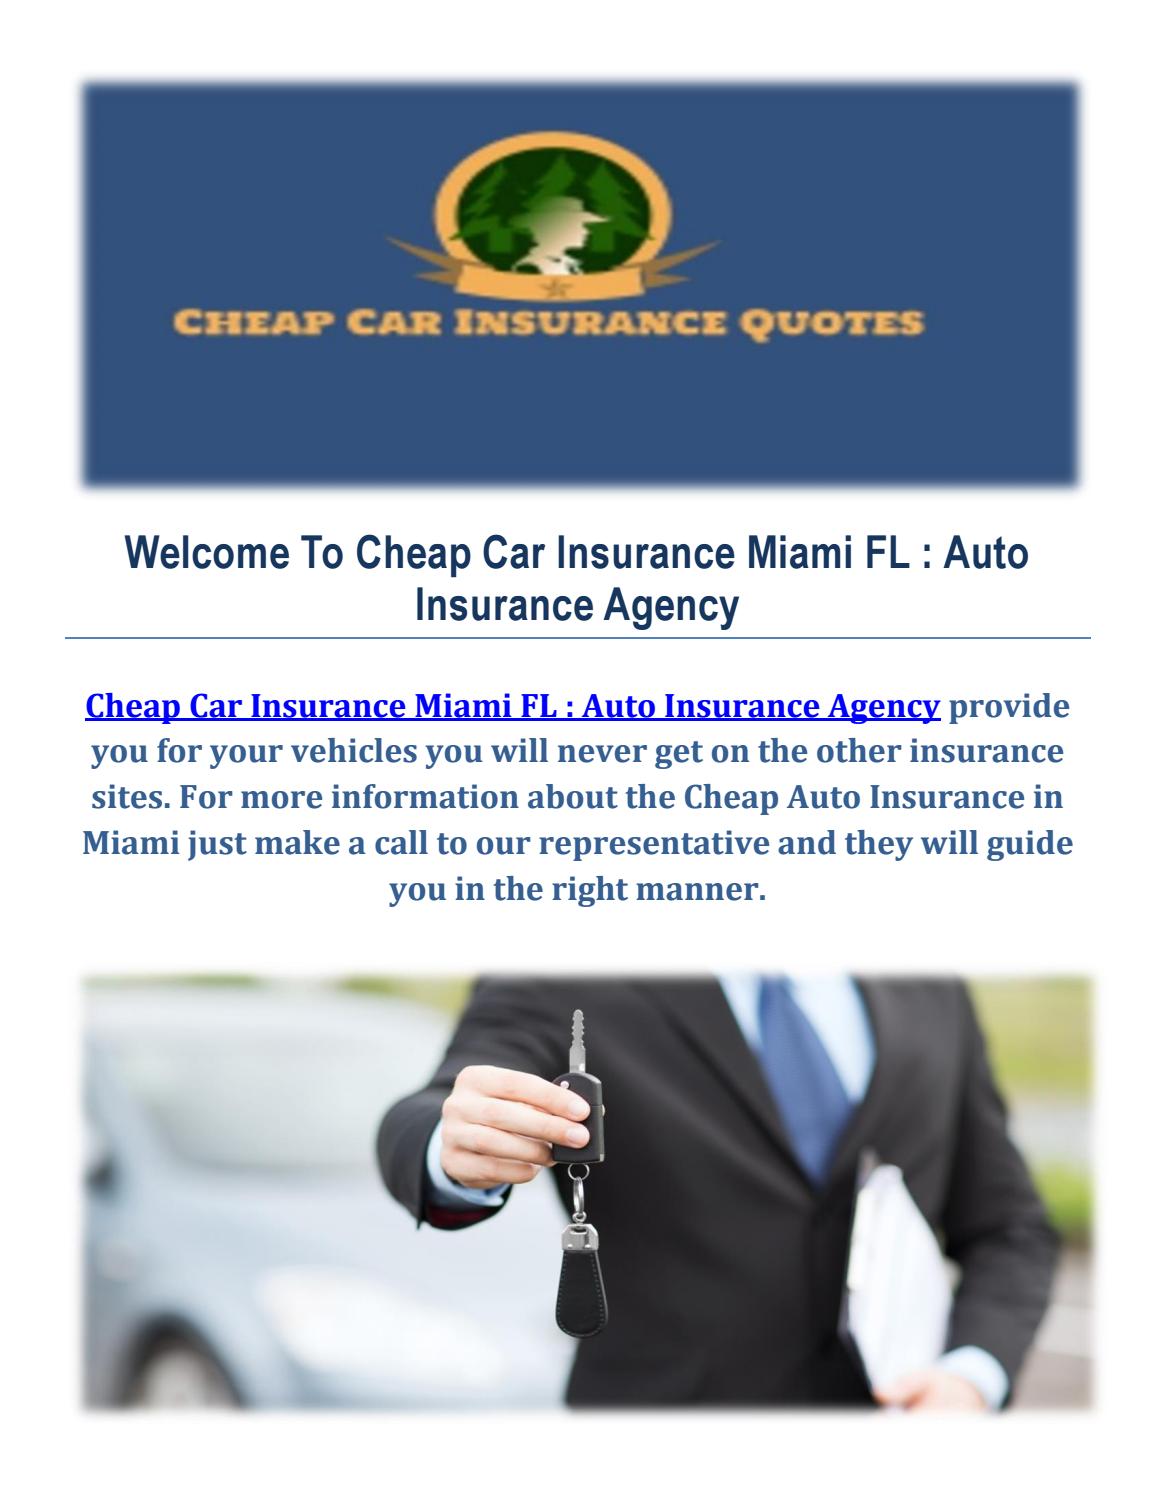 Cheap Auto Insurance in Miami FL by Cheap Car Insurance Miami FL : Auto